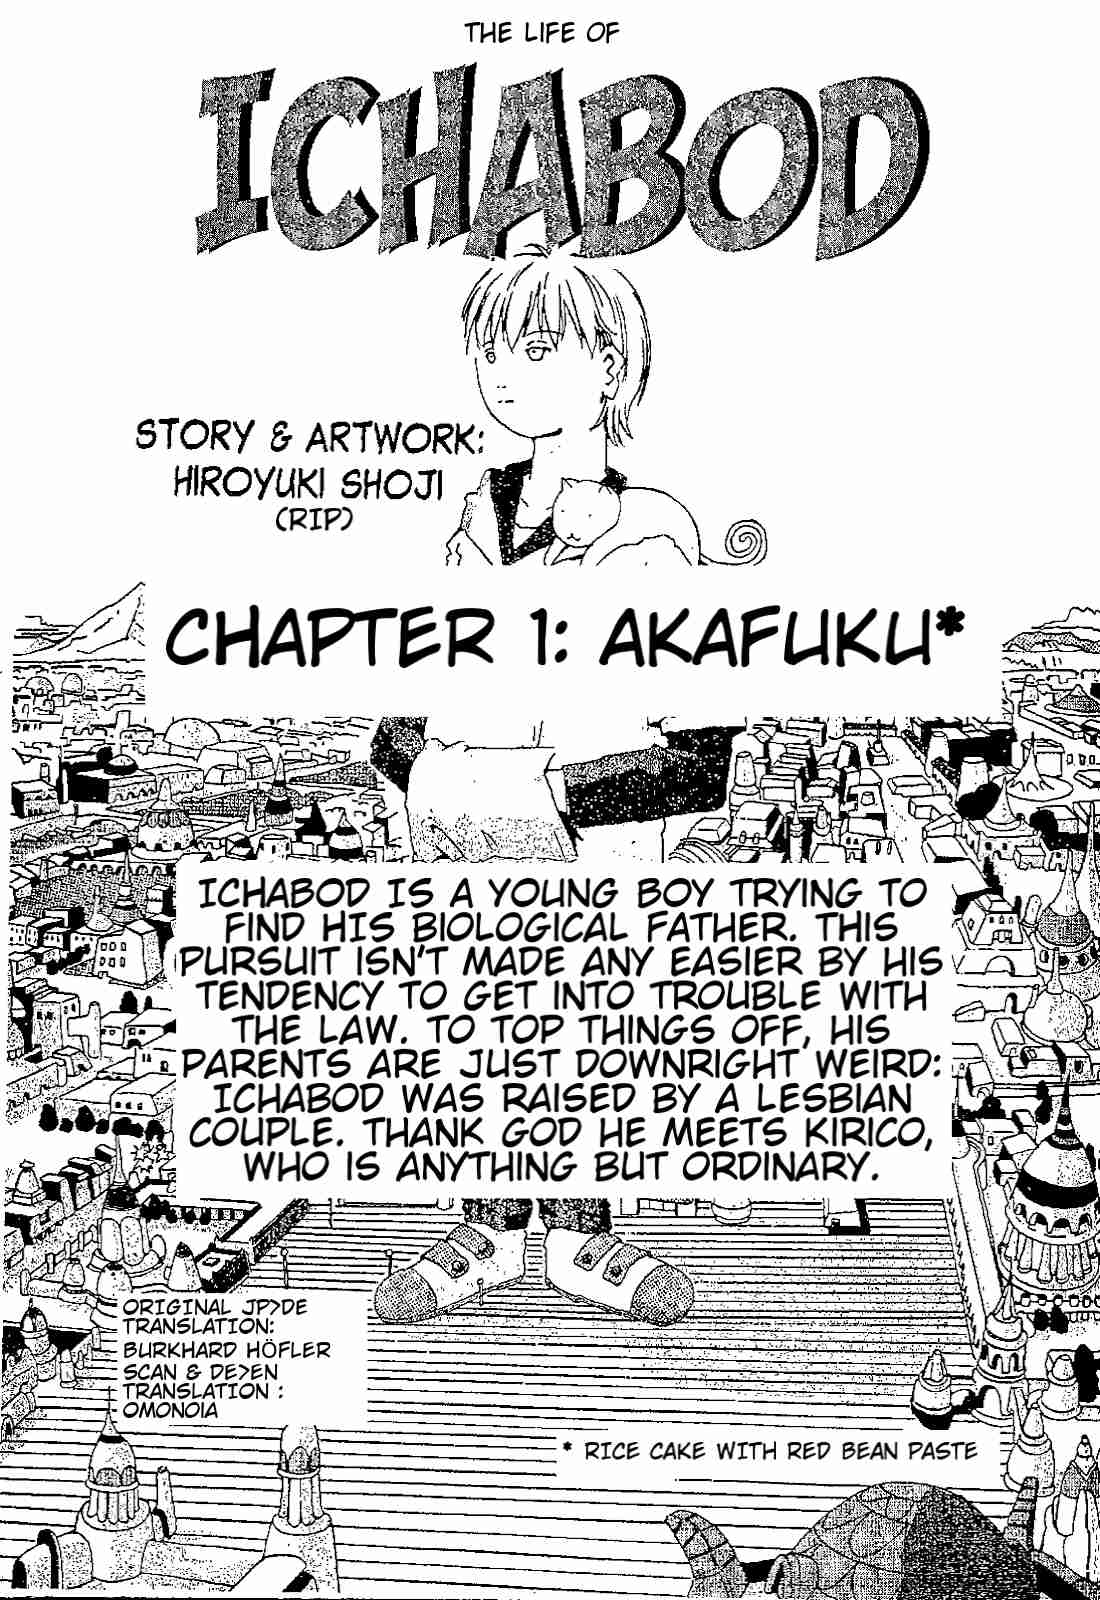 The Life of Ichabod Vol. 1 Ch. 1 Akafuku